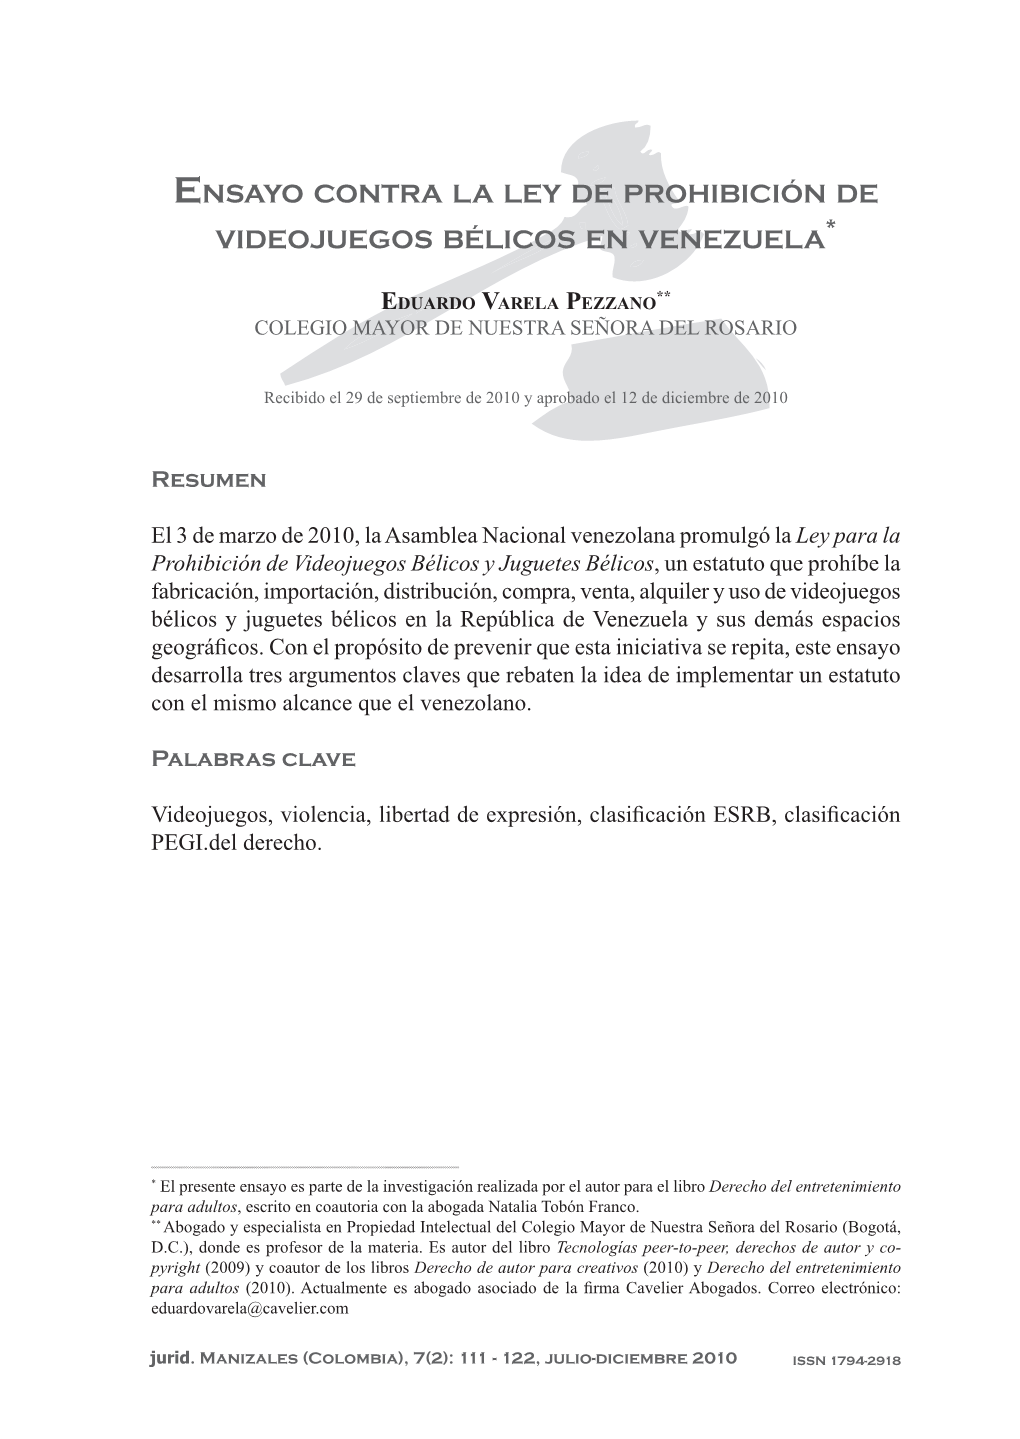 Ensayo Contra La Ley De Prohibición De Videojuegos Bélicos En Venezuela*